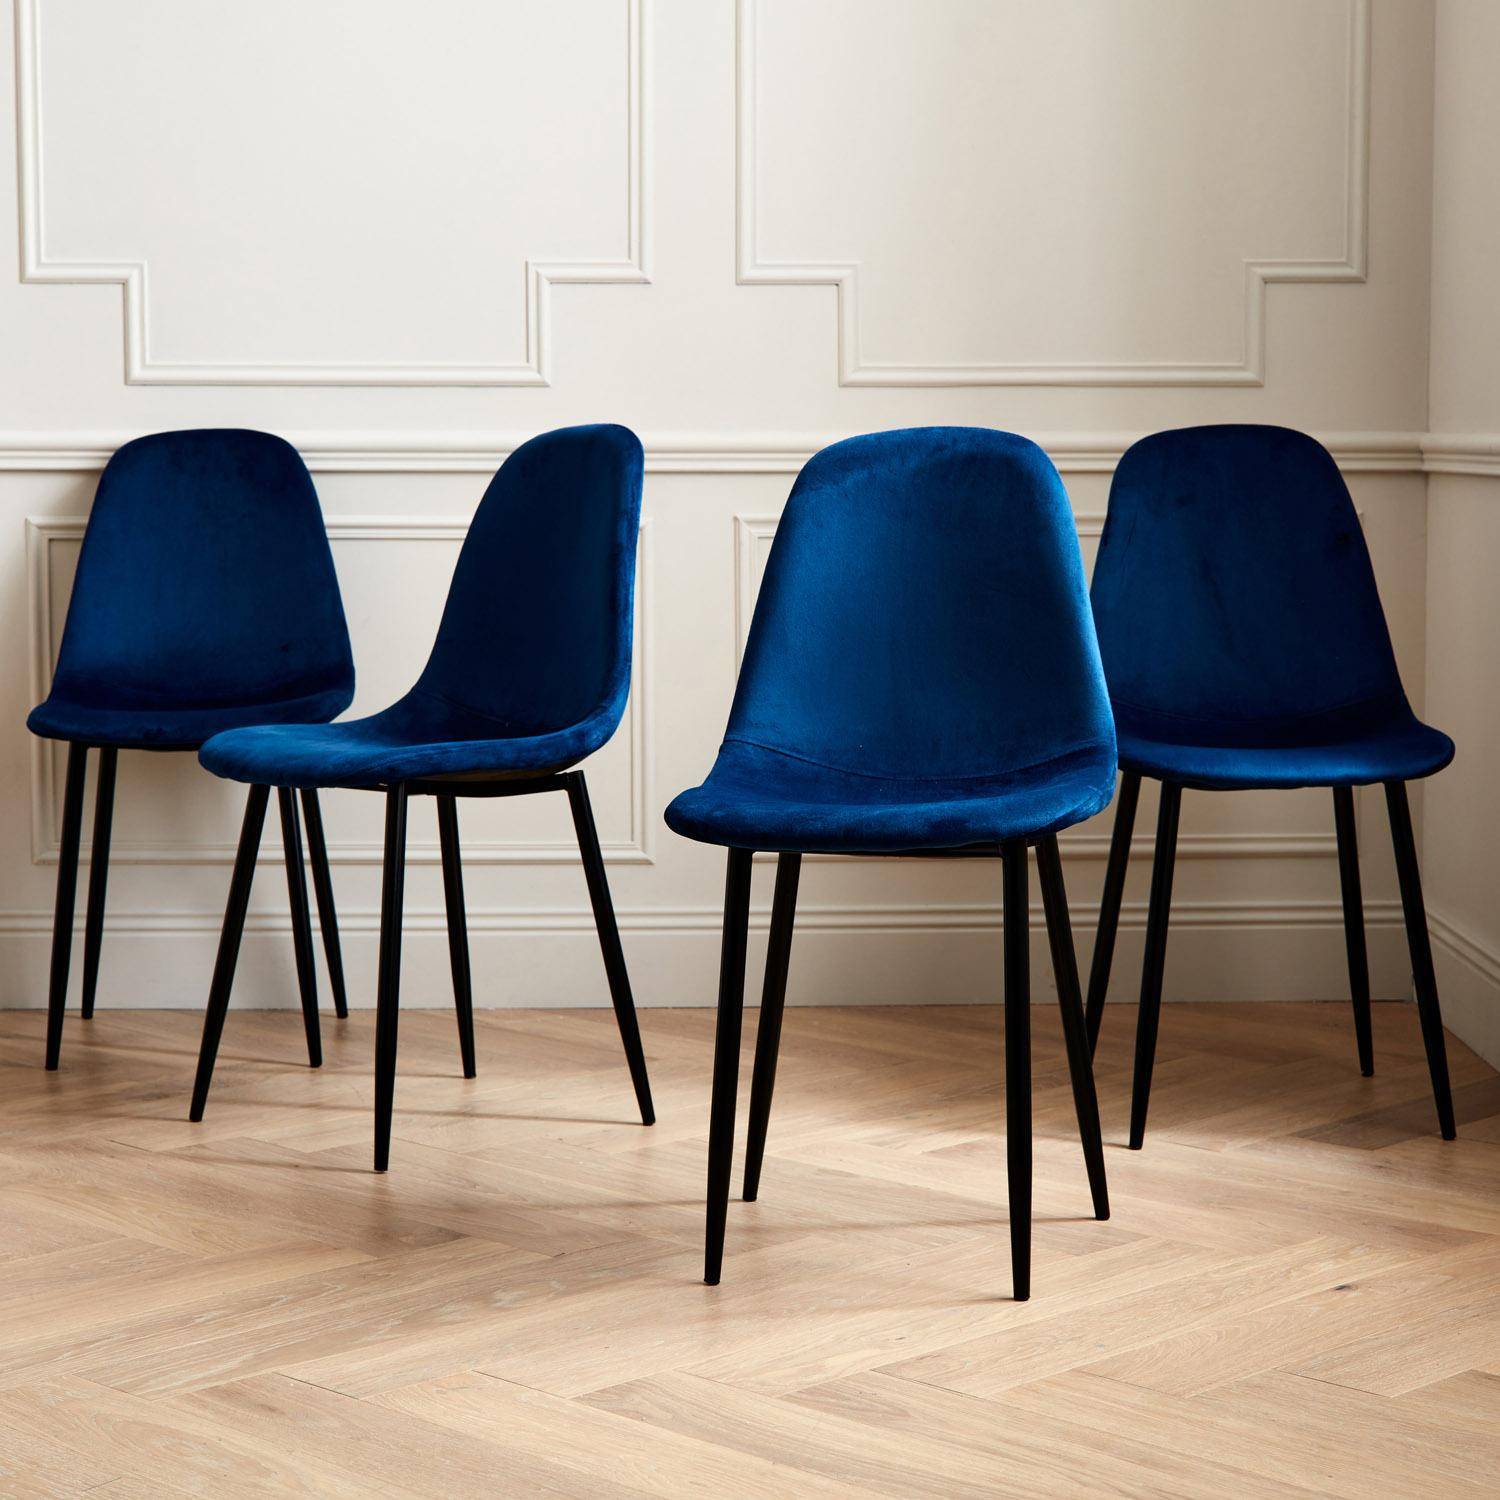 Set van 4 stoelen - Bombay - velours stoelen, metalen poten, vintage, comfortabel, design, stalen onderstel, B44xD53 x H88cmn - Blauw Photo1